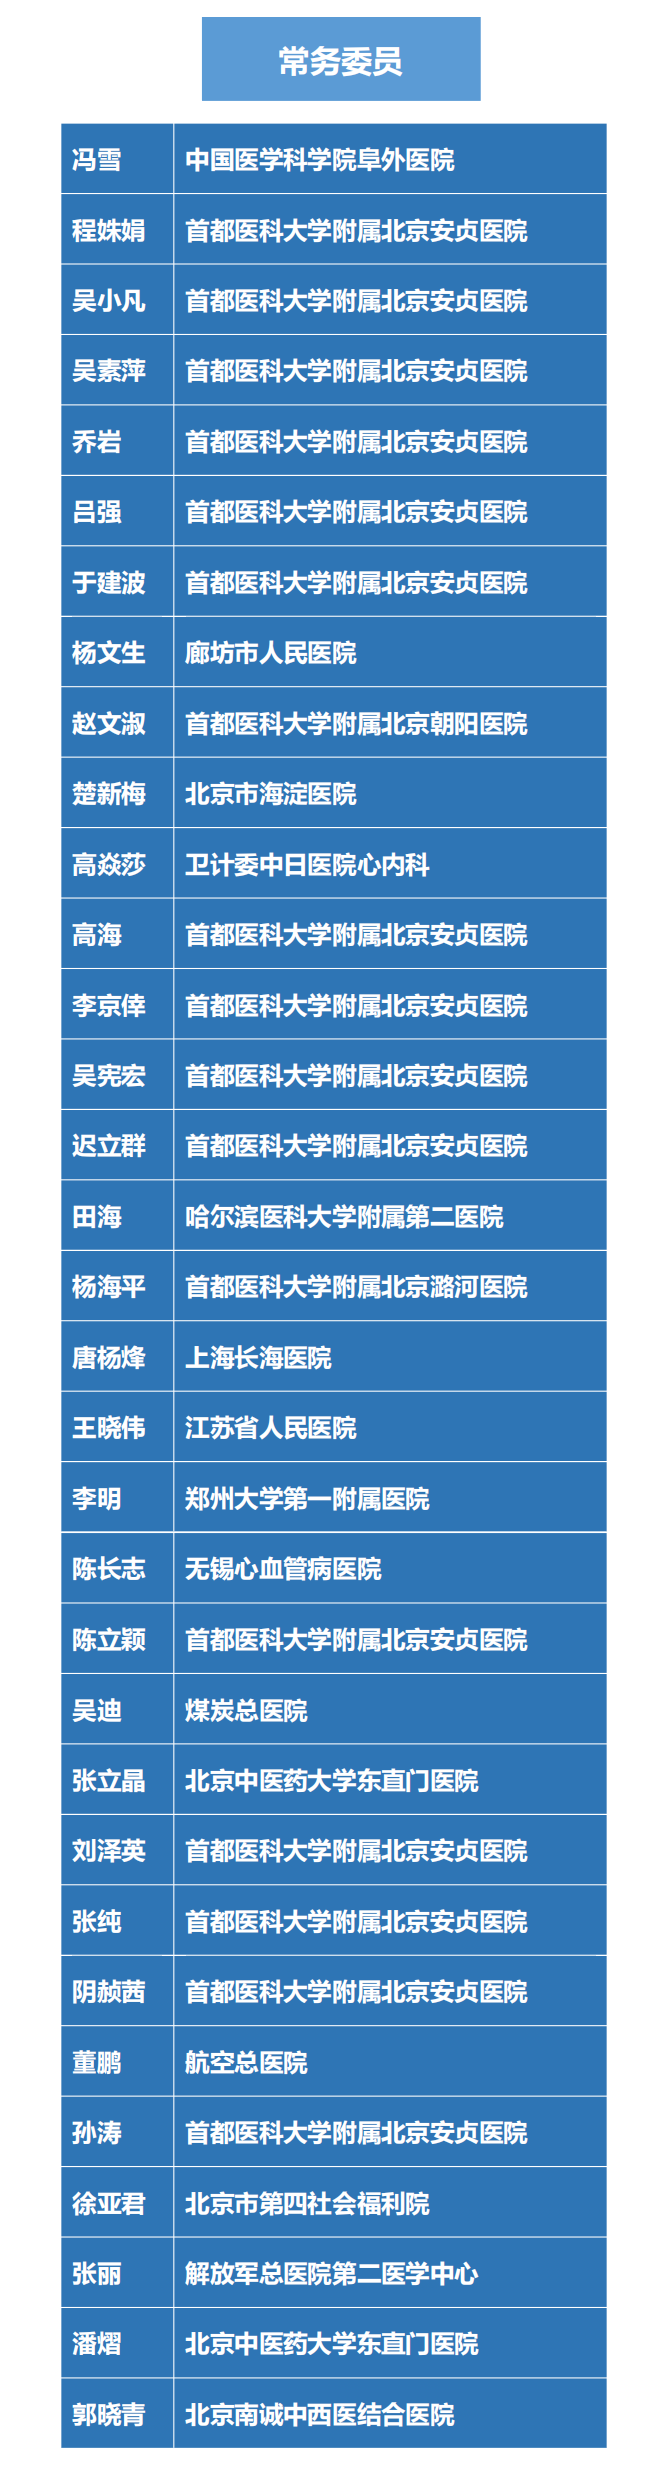 中国老年保健协会心血管疾病预防与康复专业委员会架构(1)_03.png